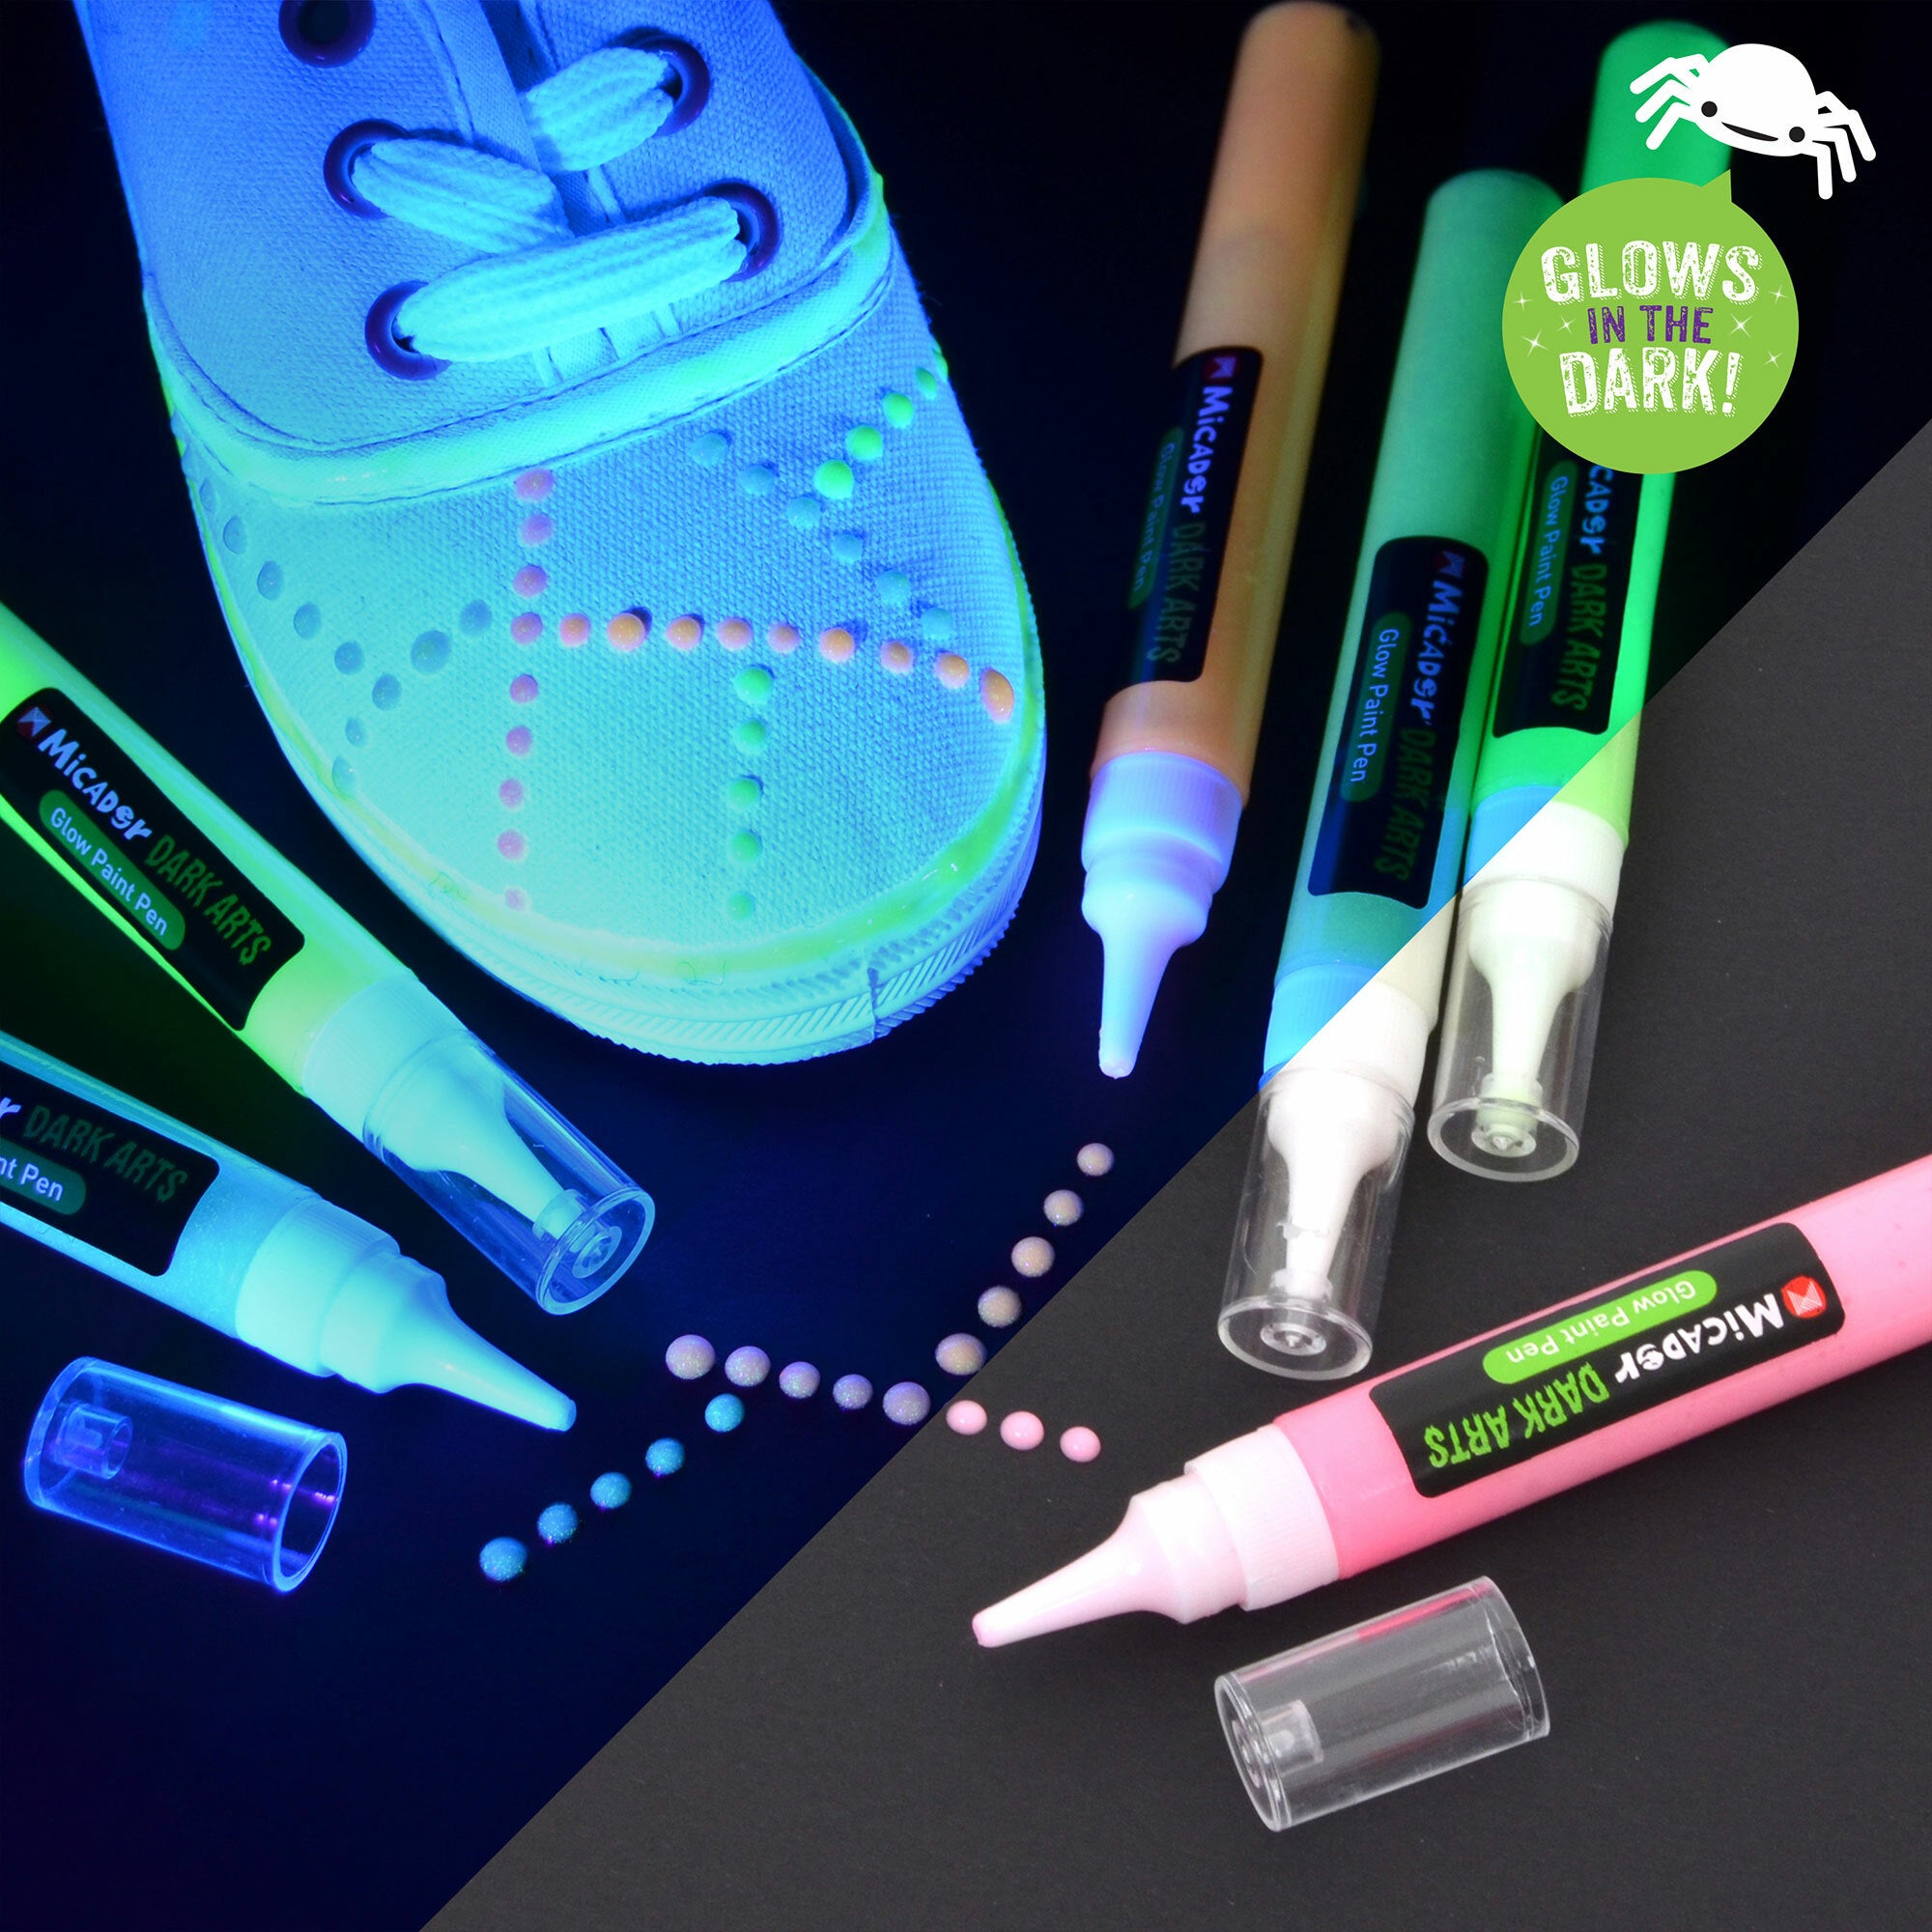 Micador Dark Arts, Glow Paint Pens Set, 6 - Color Pen Set